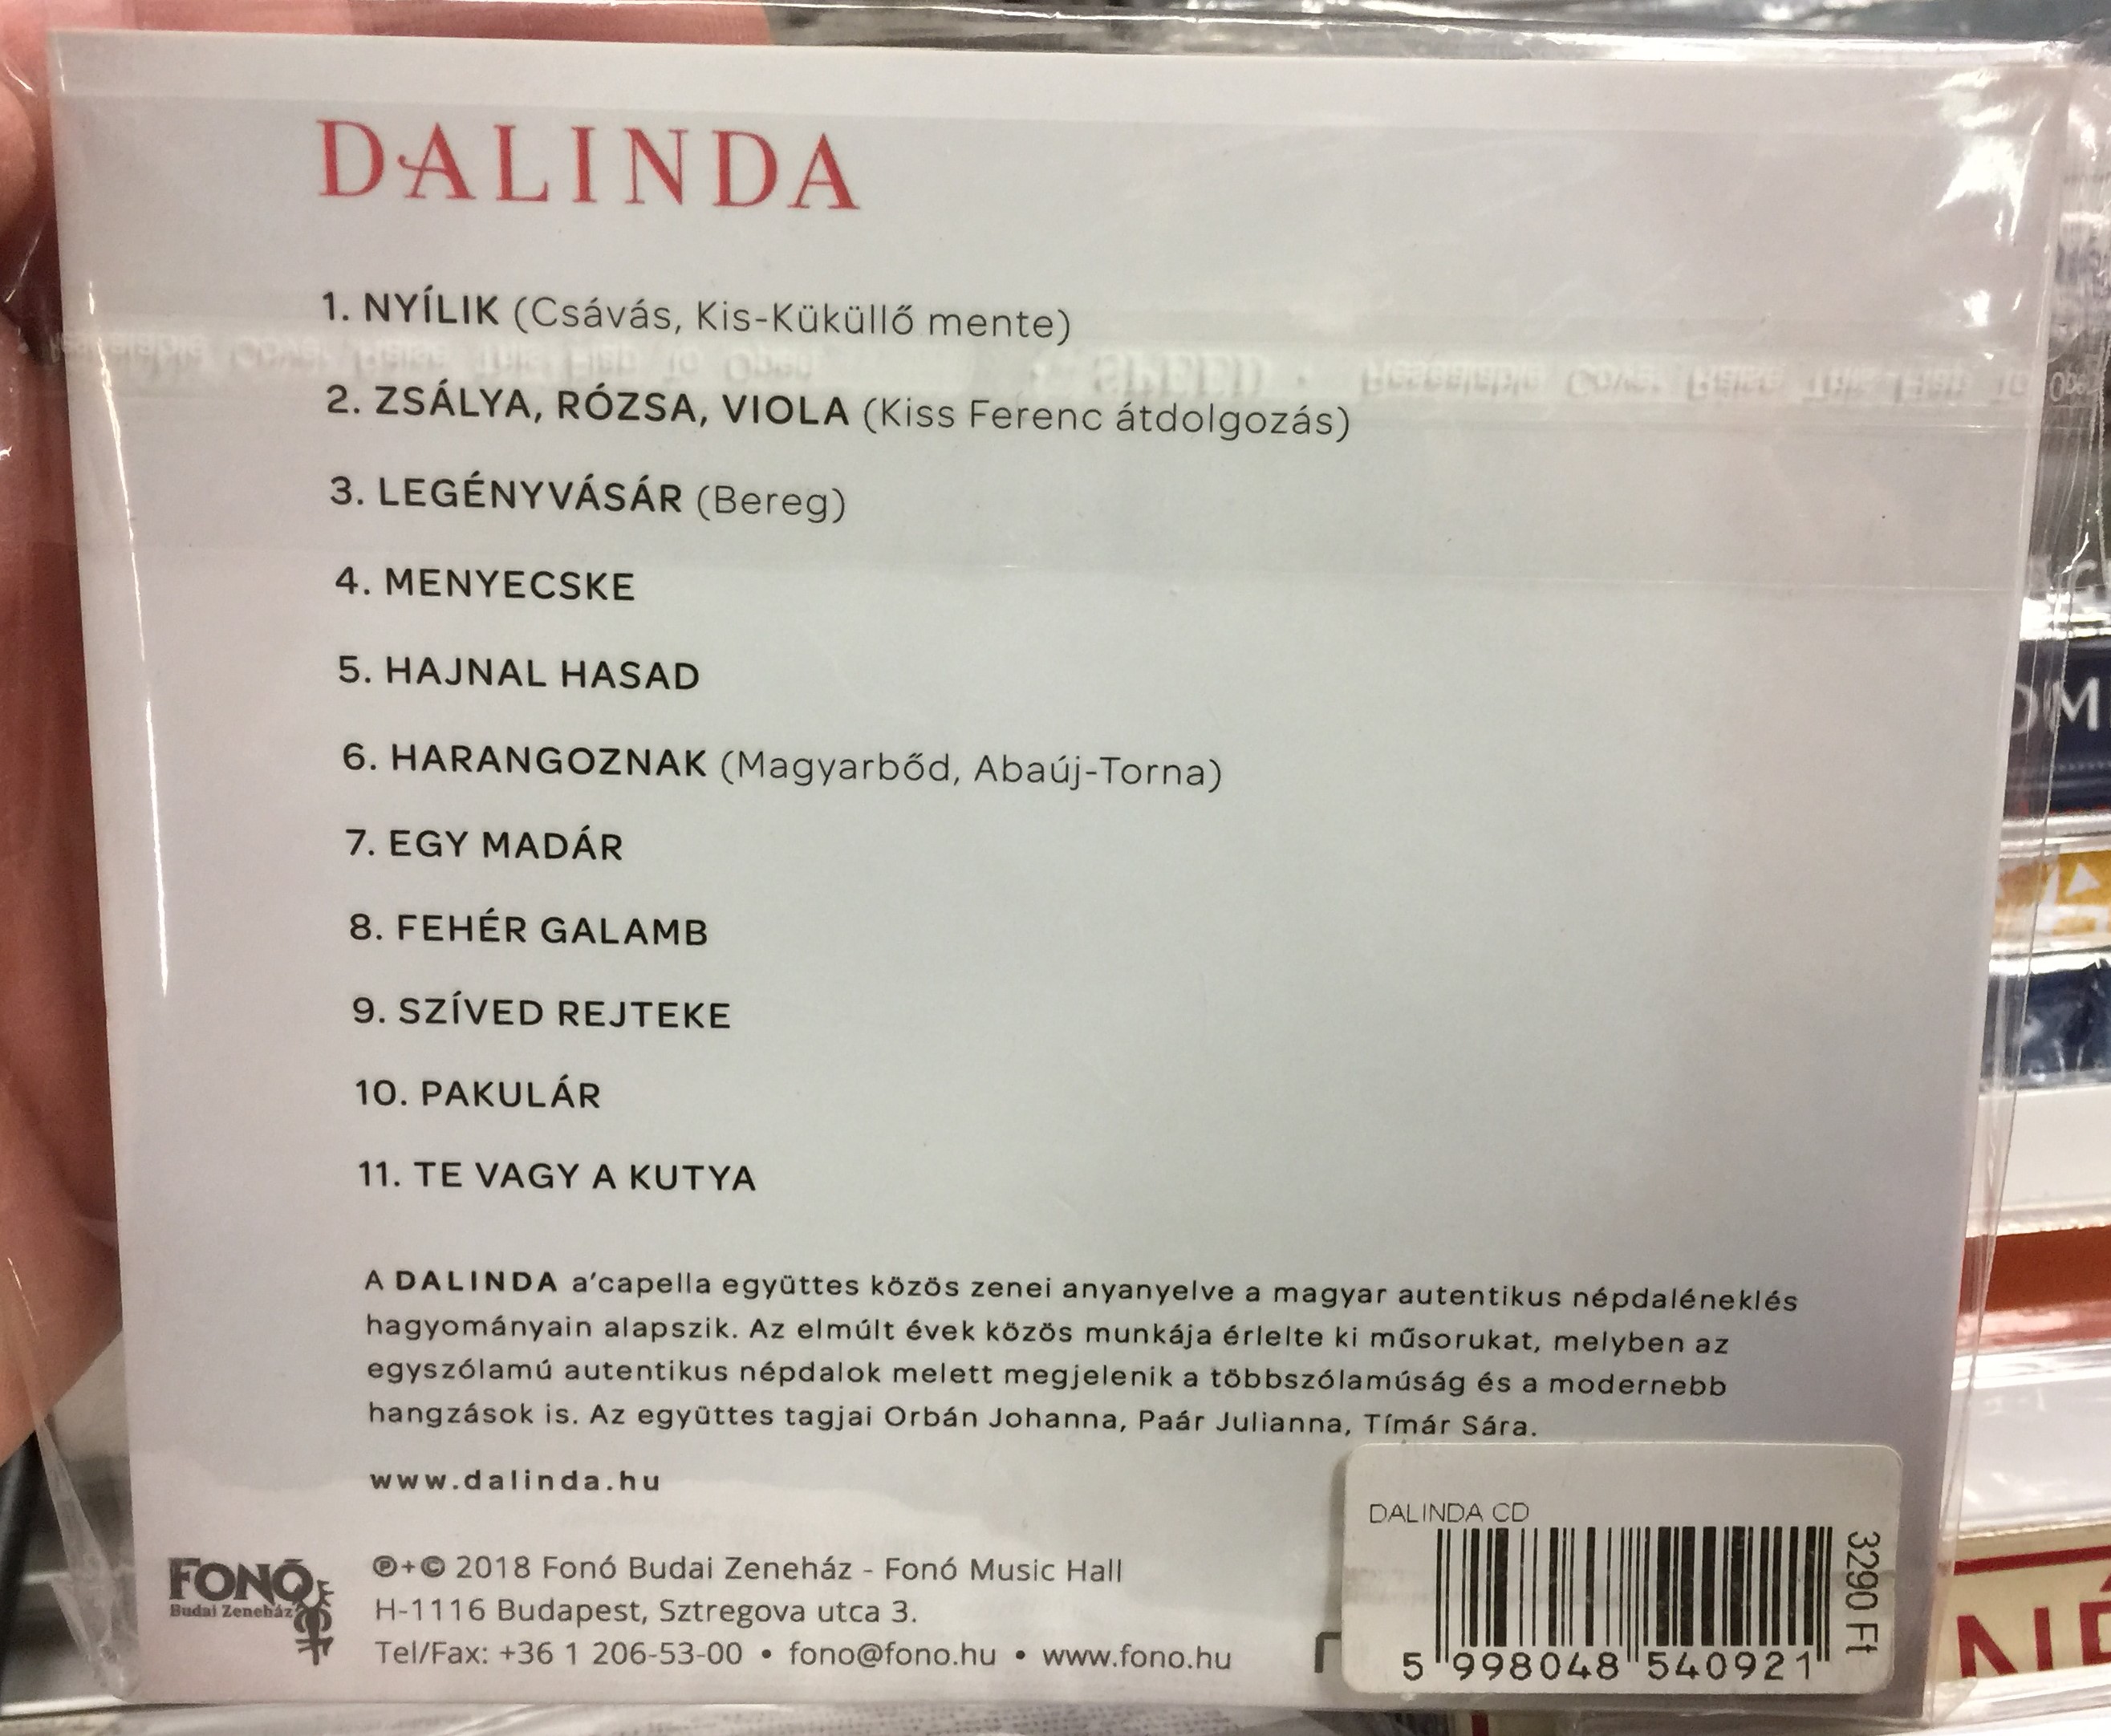 dalinda-fon-records-audio-cd-2018-fa-409-2-2-.jpg